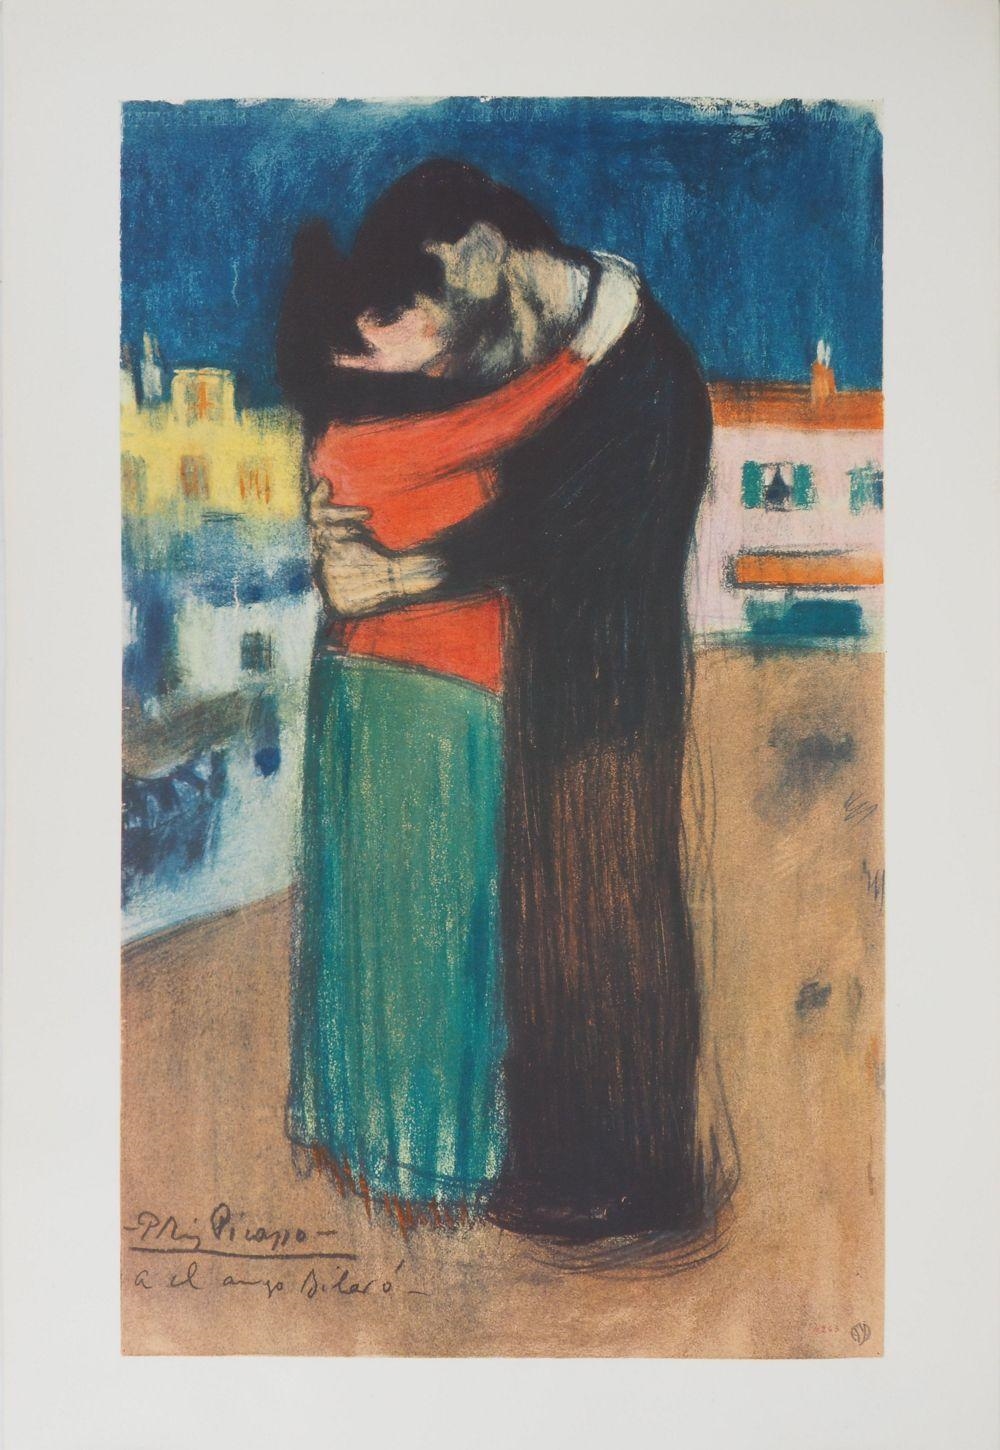 Hommage à Toulouse-Lautrec : Couple amoureux by Pablo Picasso, circa 1960